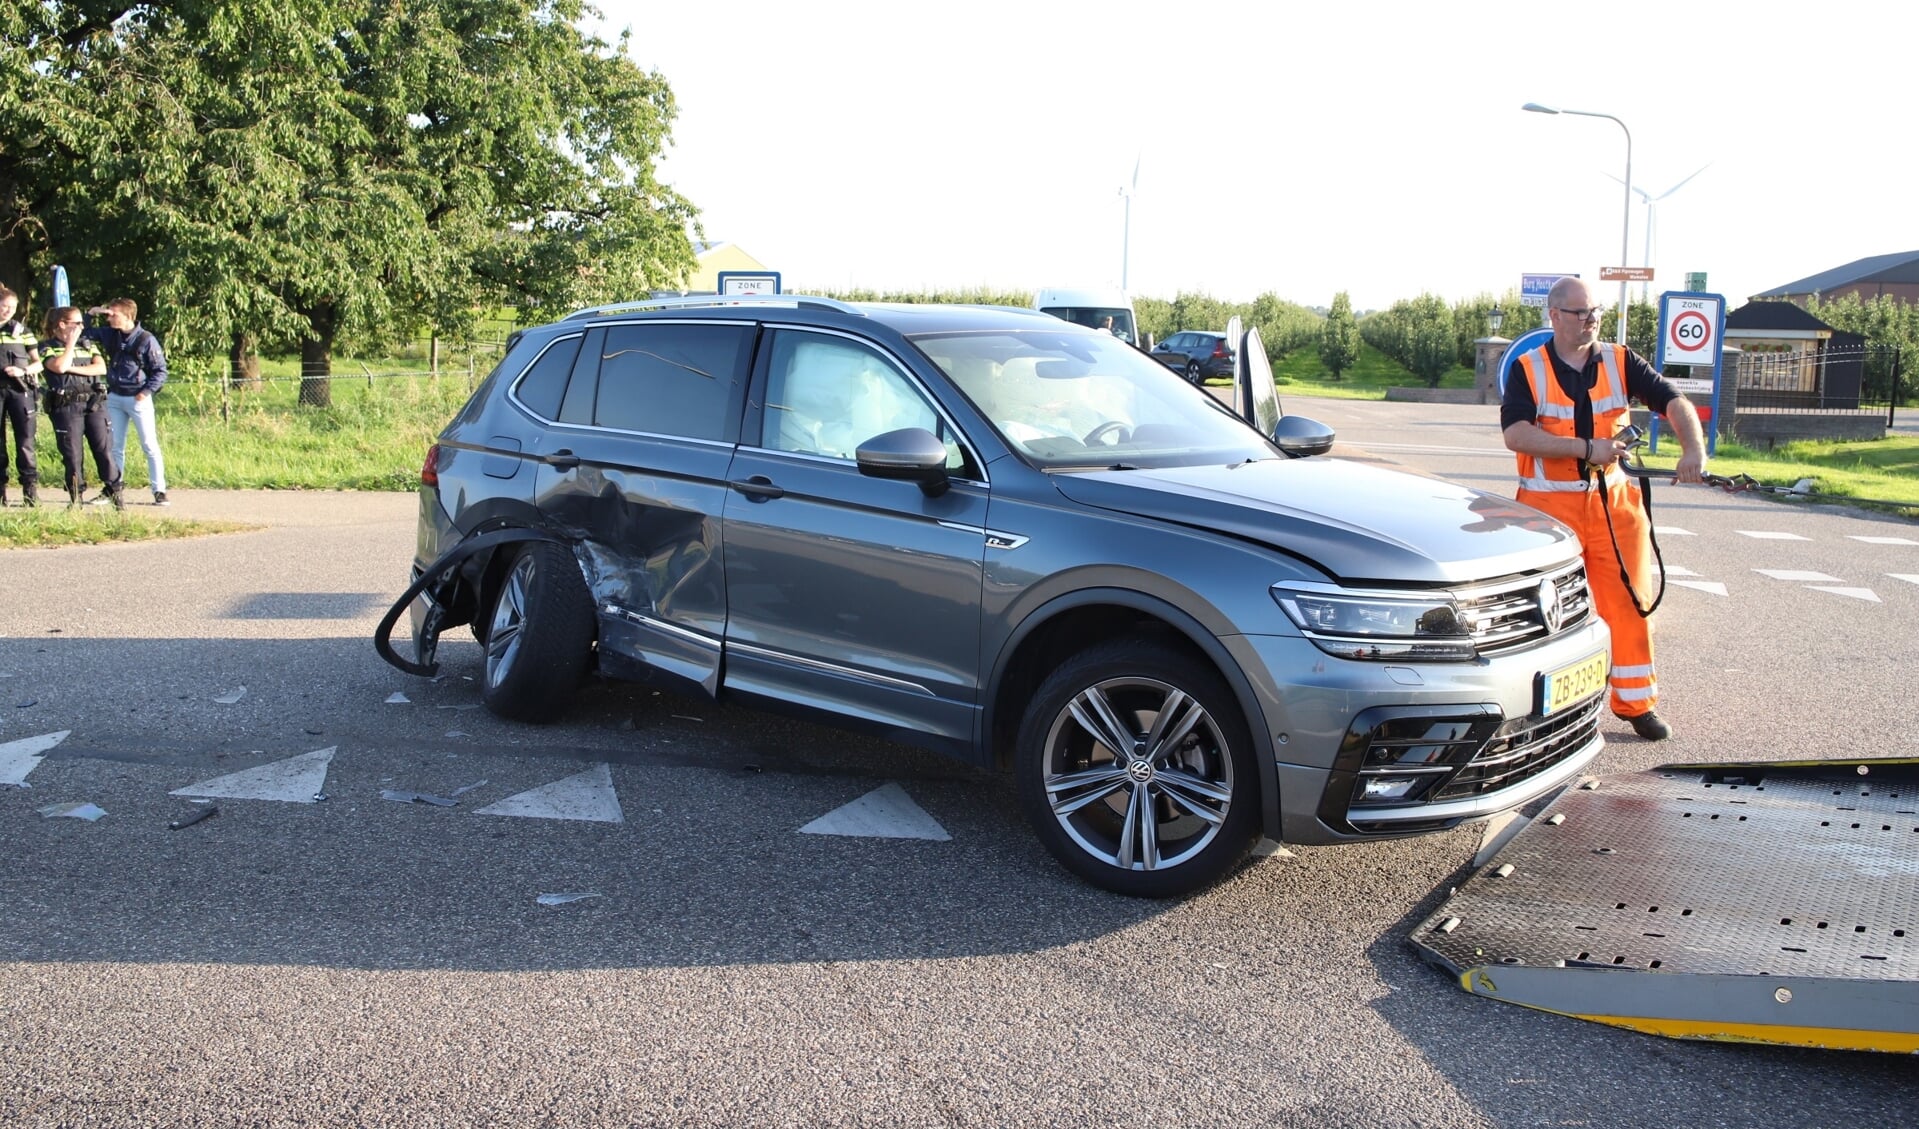 Twee van de bij het ongeval betrokken auto's, waaronder deze Volkswagen, raakten zwaar beschadigd.